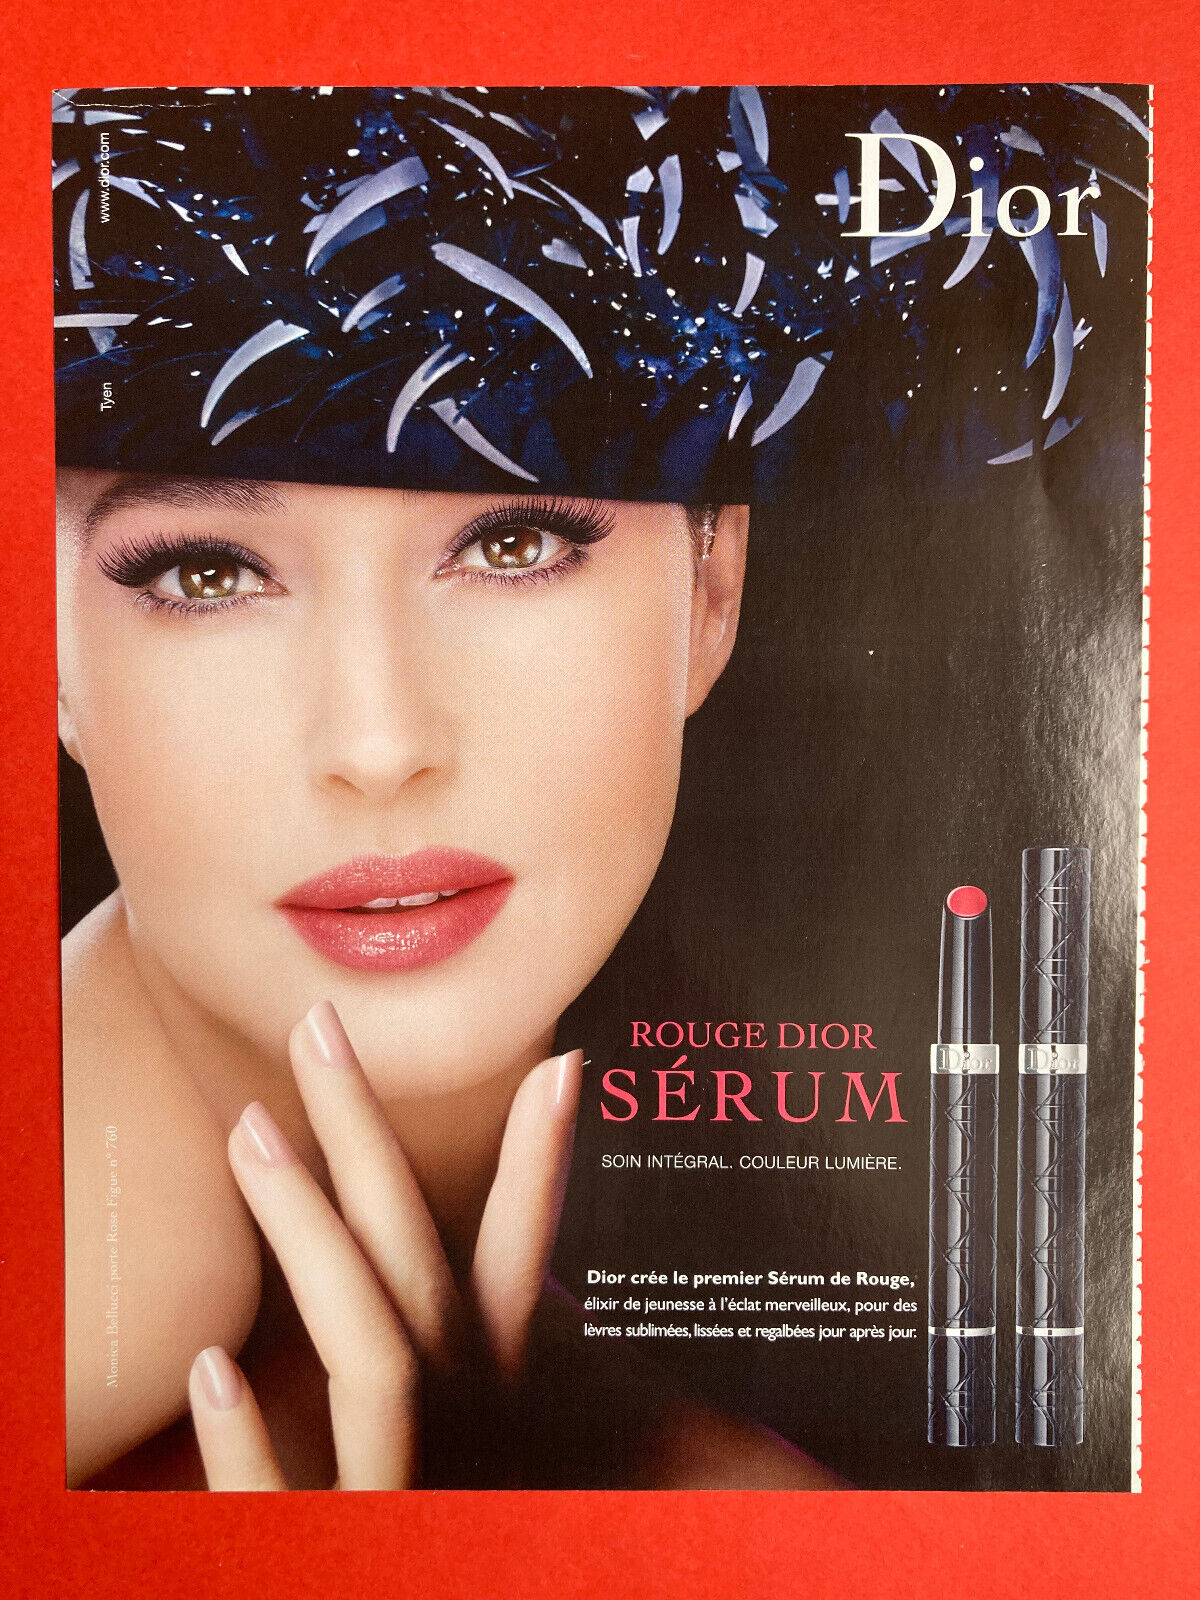 2010 Christian Dior Monica Bellucci Beauty Makeup Advertising Lipstick